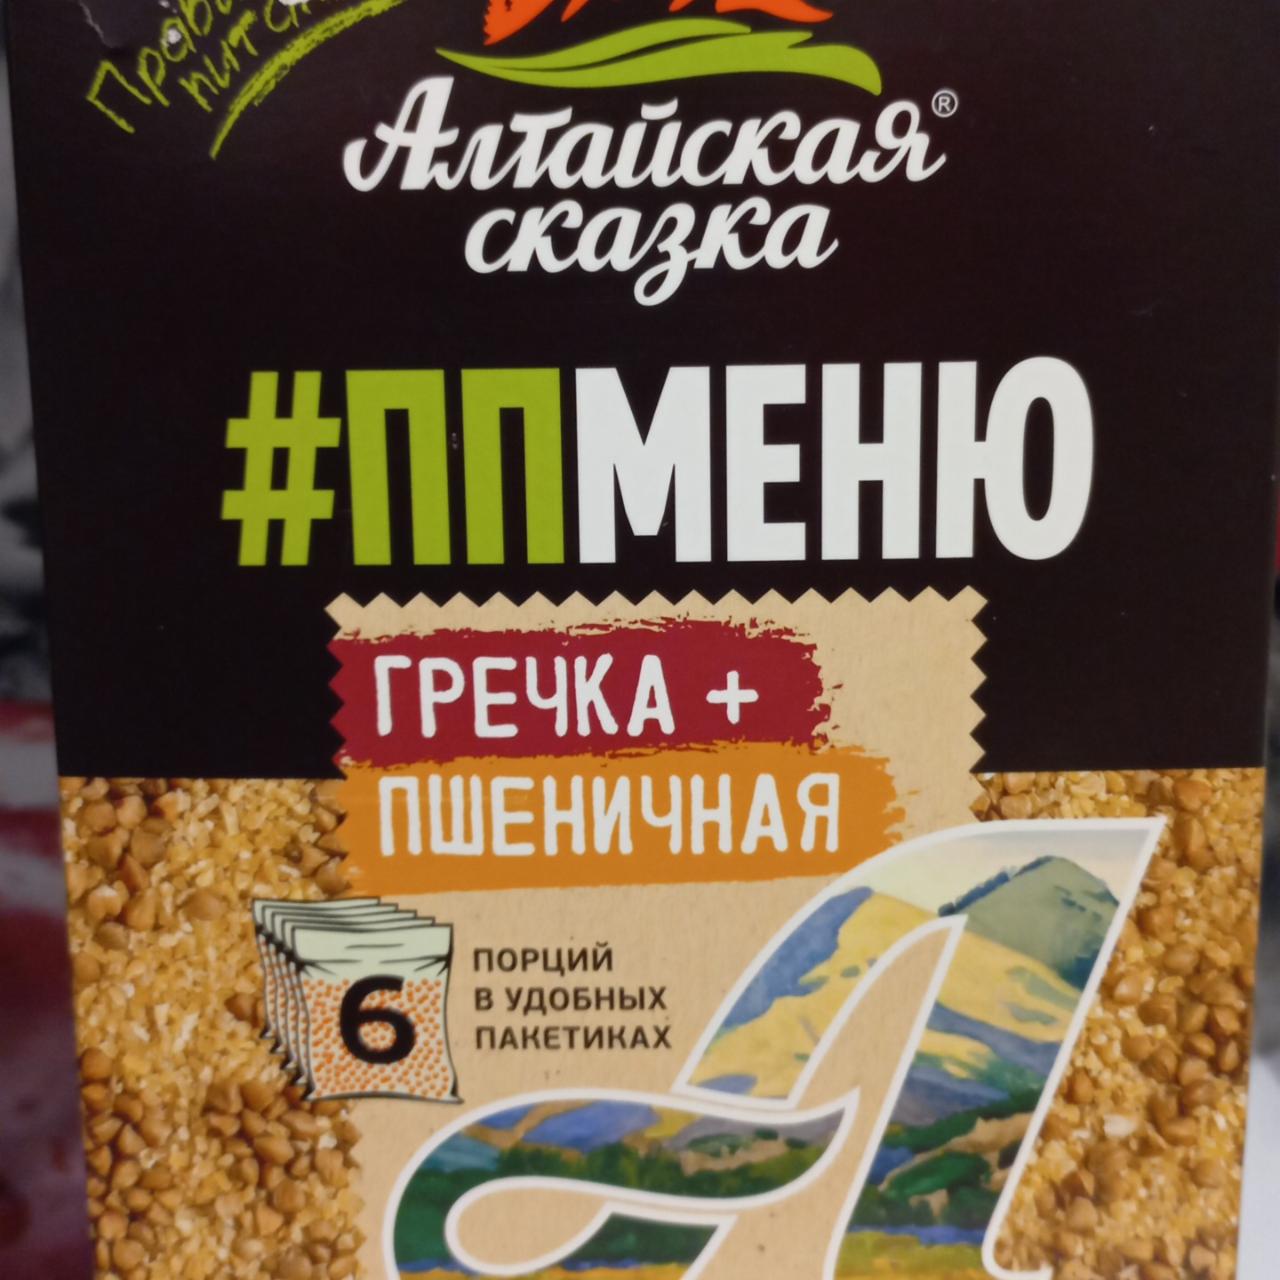 Фото - ПП меню гречка+пшеничная Алтайская сказка